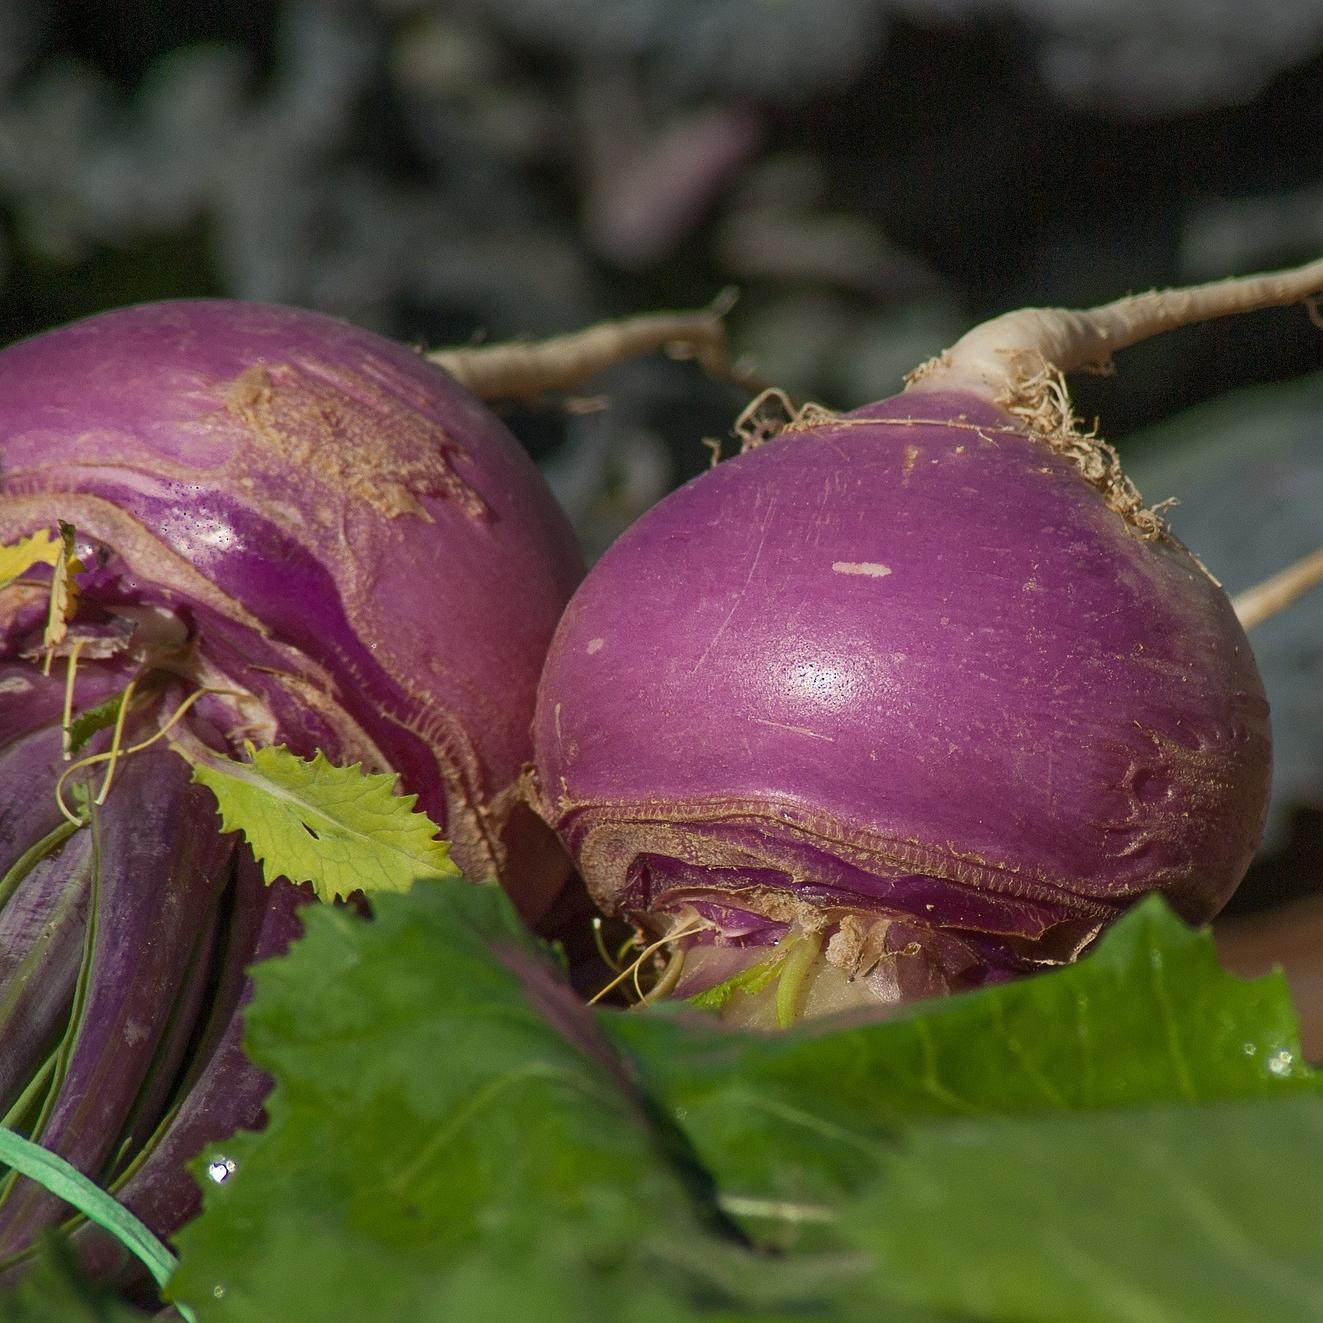 2 turnips